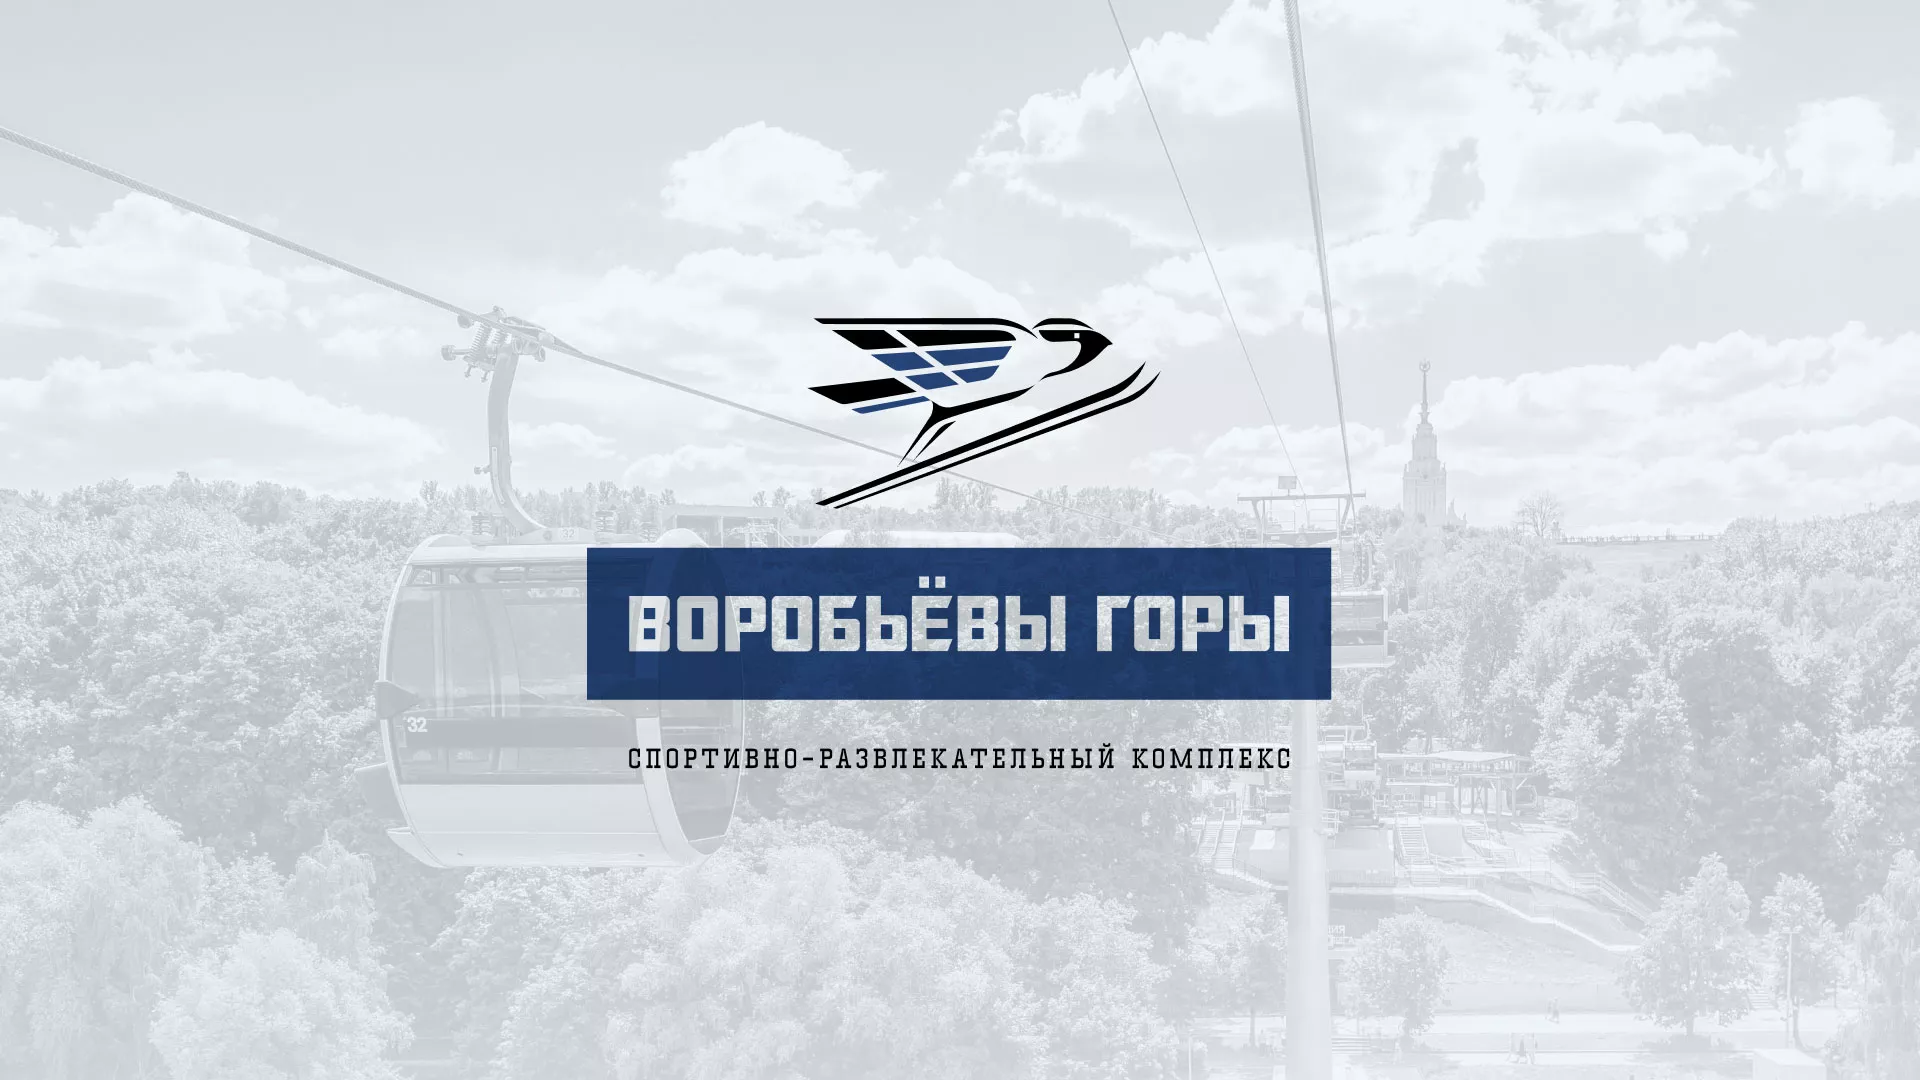 Разработка сайта в Комсомольске-на-Амуре для спортивно-развлекательного комплекса «Воробьёвы горы»